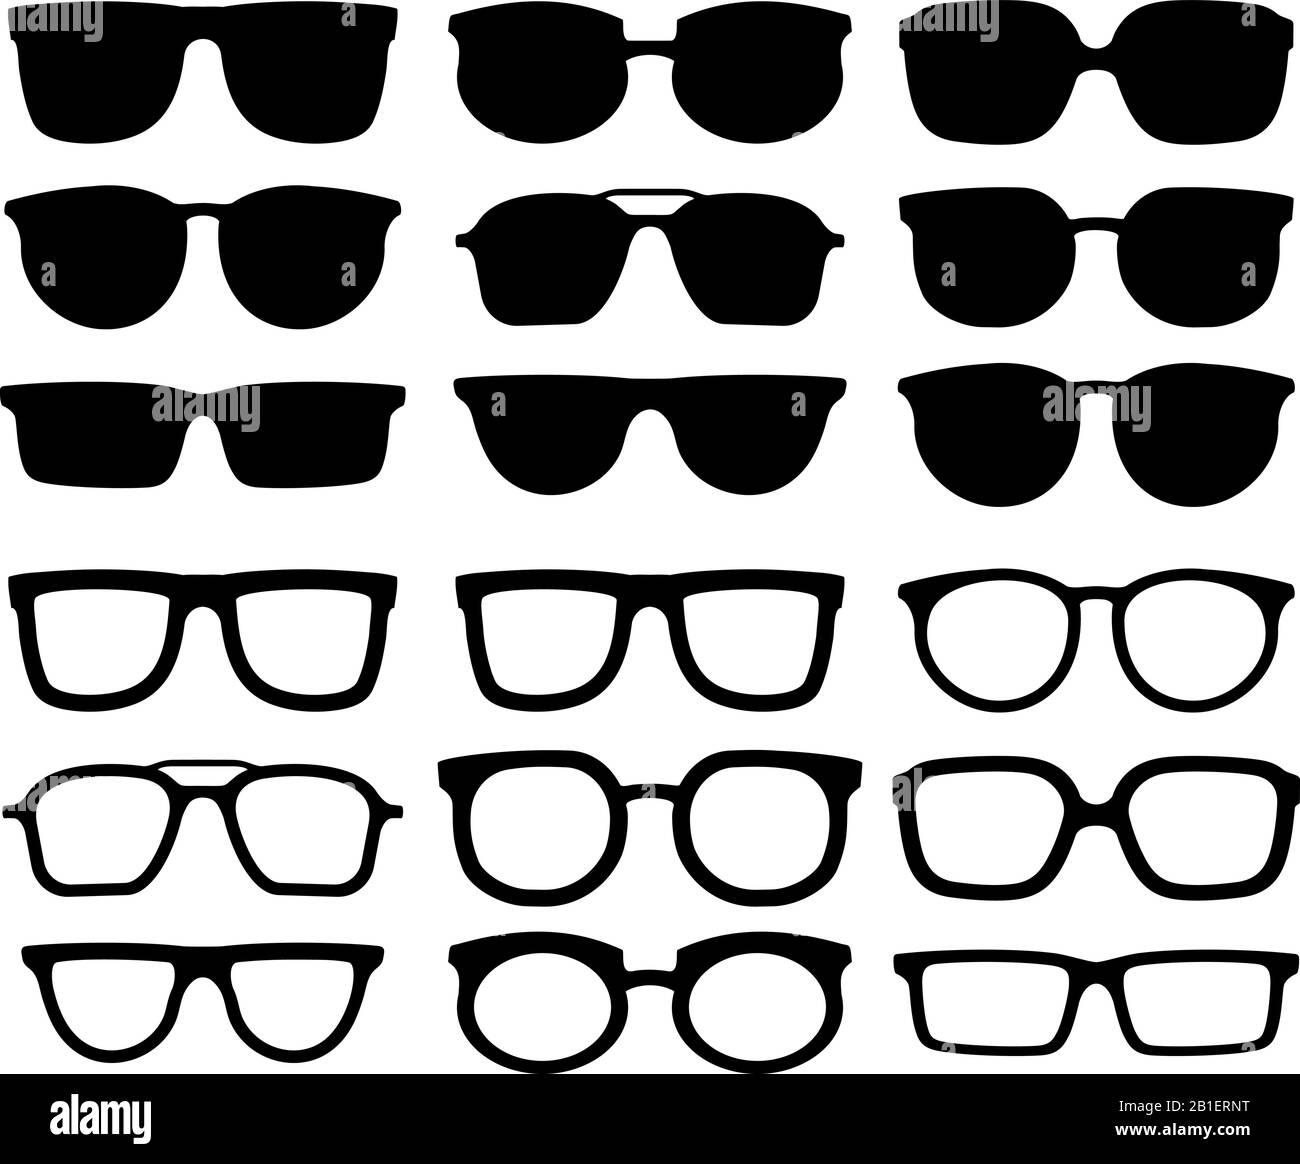 Brille Silhouette. Geek-Brille, kühle Sonnenbrille und Brillensilhouetten Vektorkollektion Stock Vektor